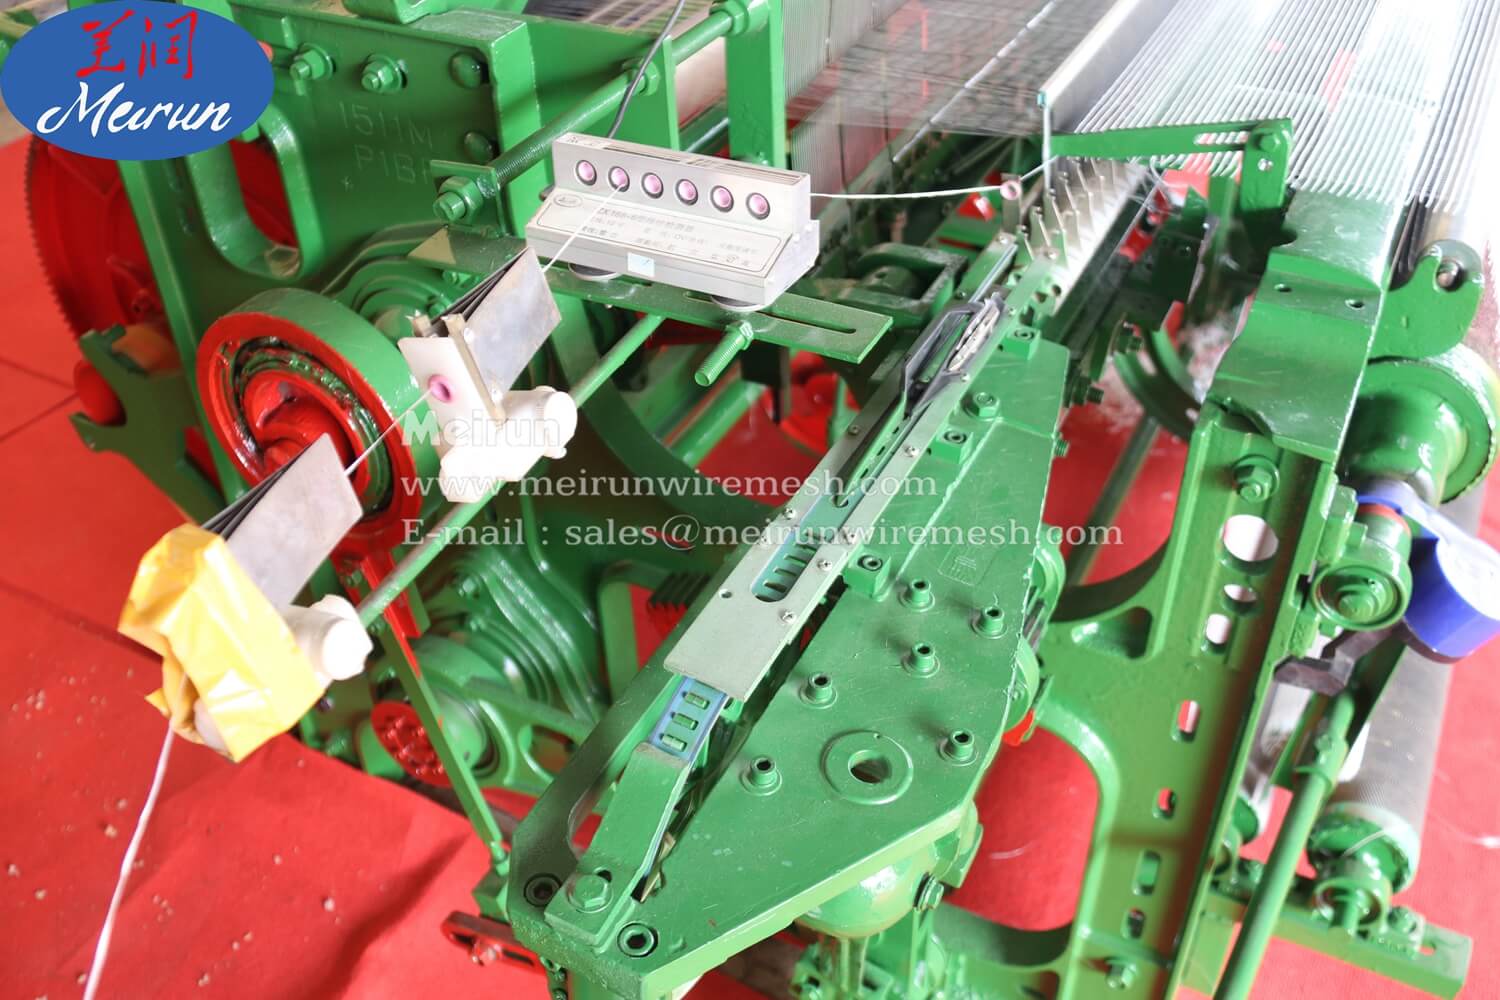 Fiberglass Mesh Coating Weaving Machine